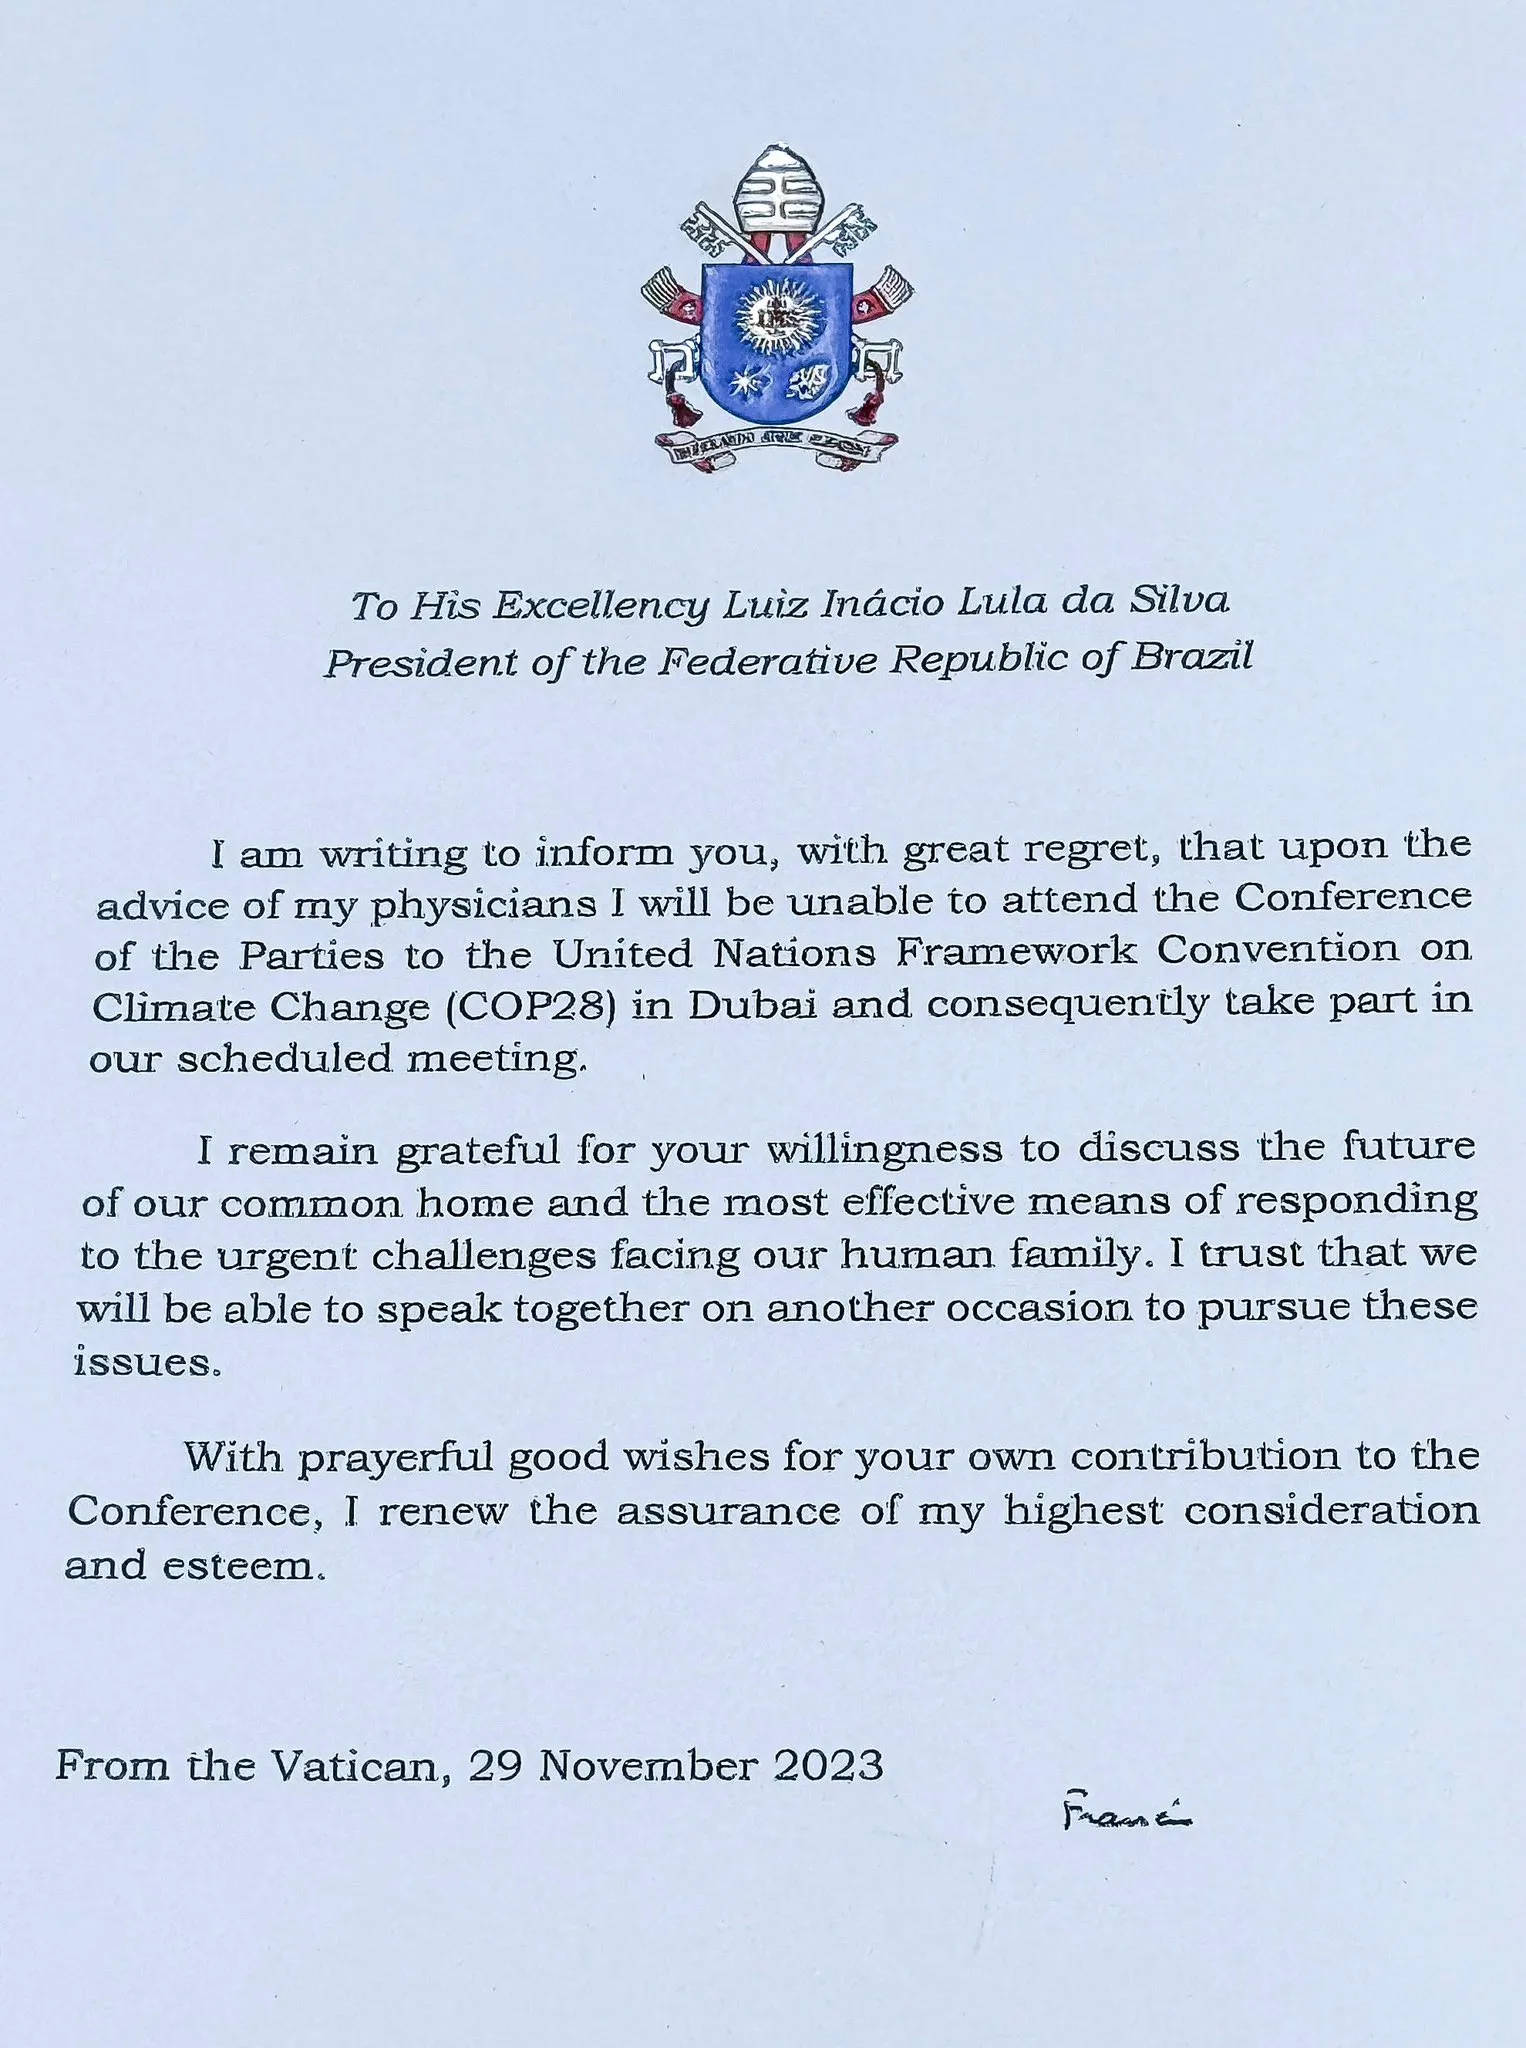 Carta encaminhada pelo Papa Francisco a Lula, redigida em inglês